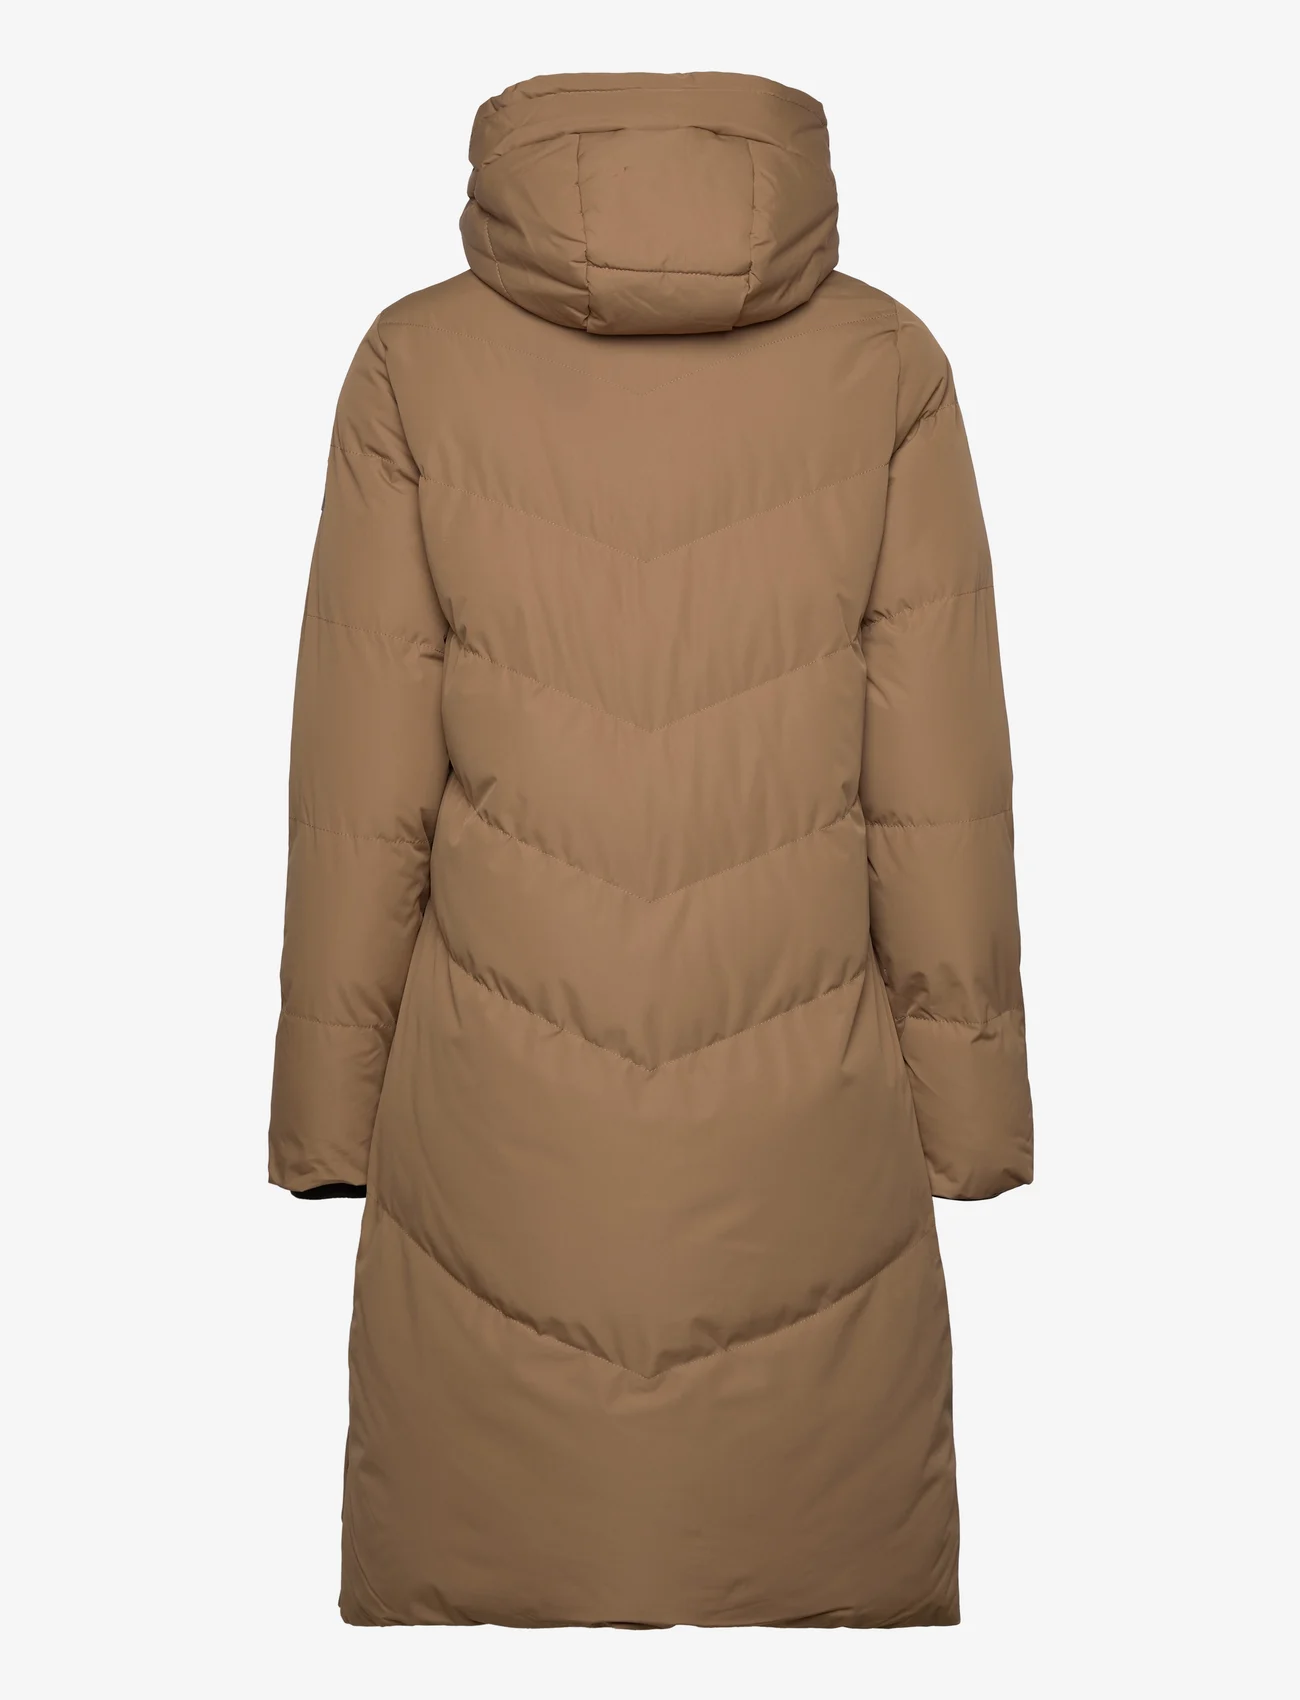 Garcia - ladies outdoor jackets - winterjassen - brown - 1